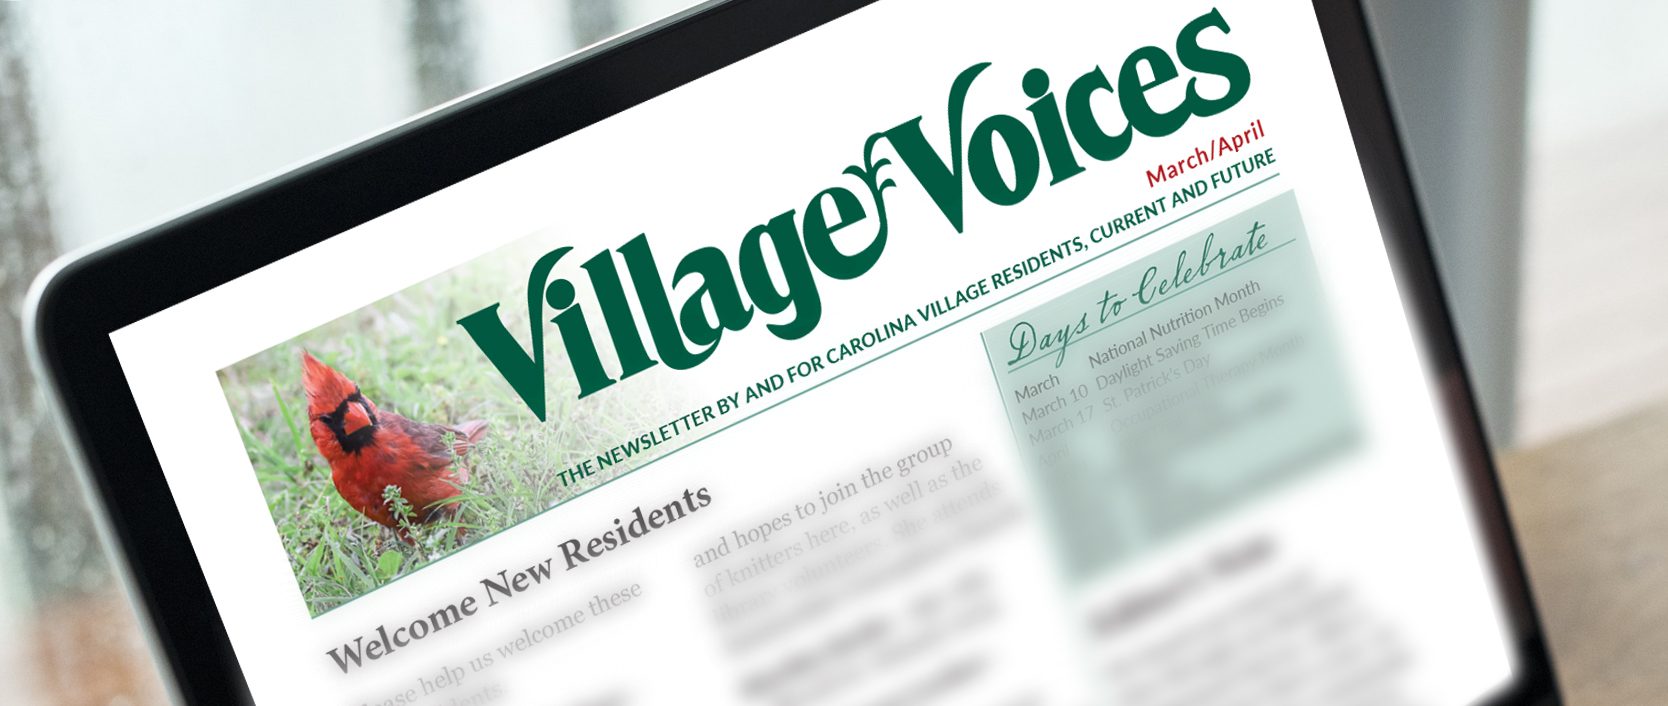 Village Voices on Laptop